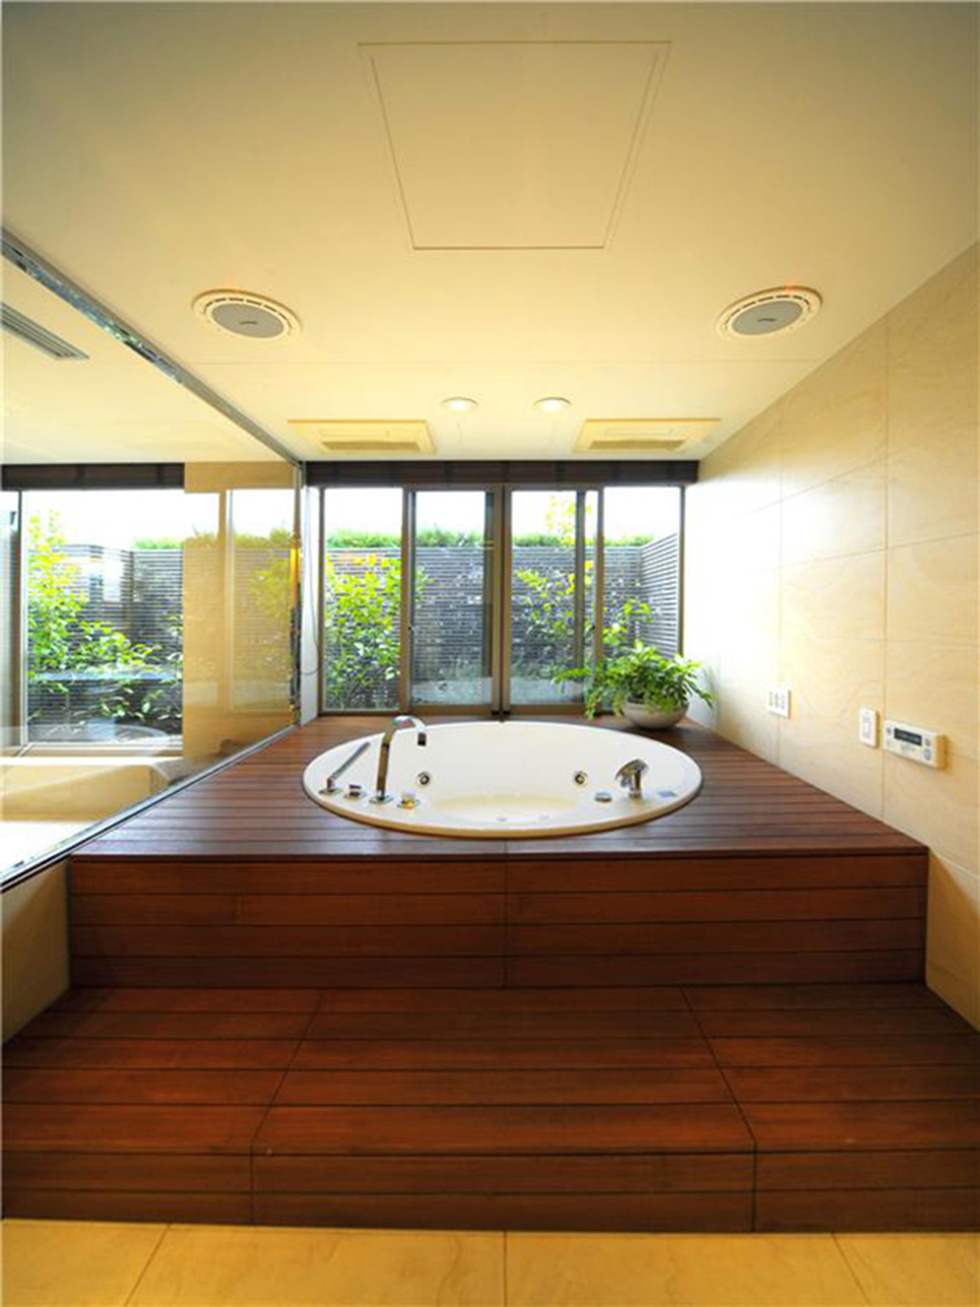 Wedo thiết kế phòng tắm đẹp, hiện đại và sang trọng